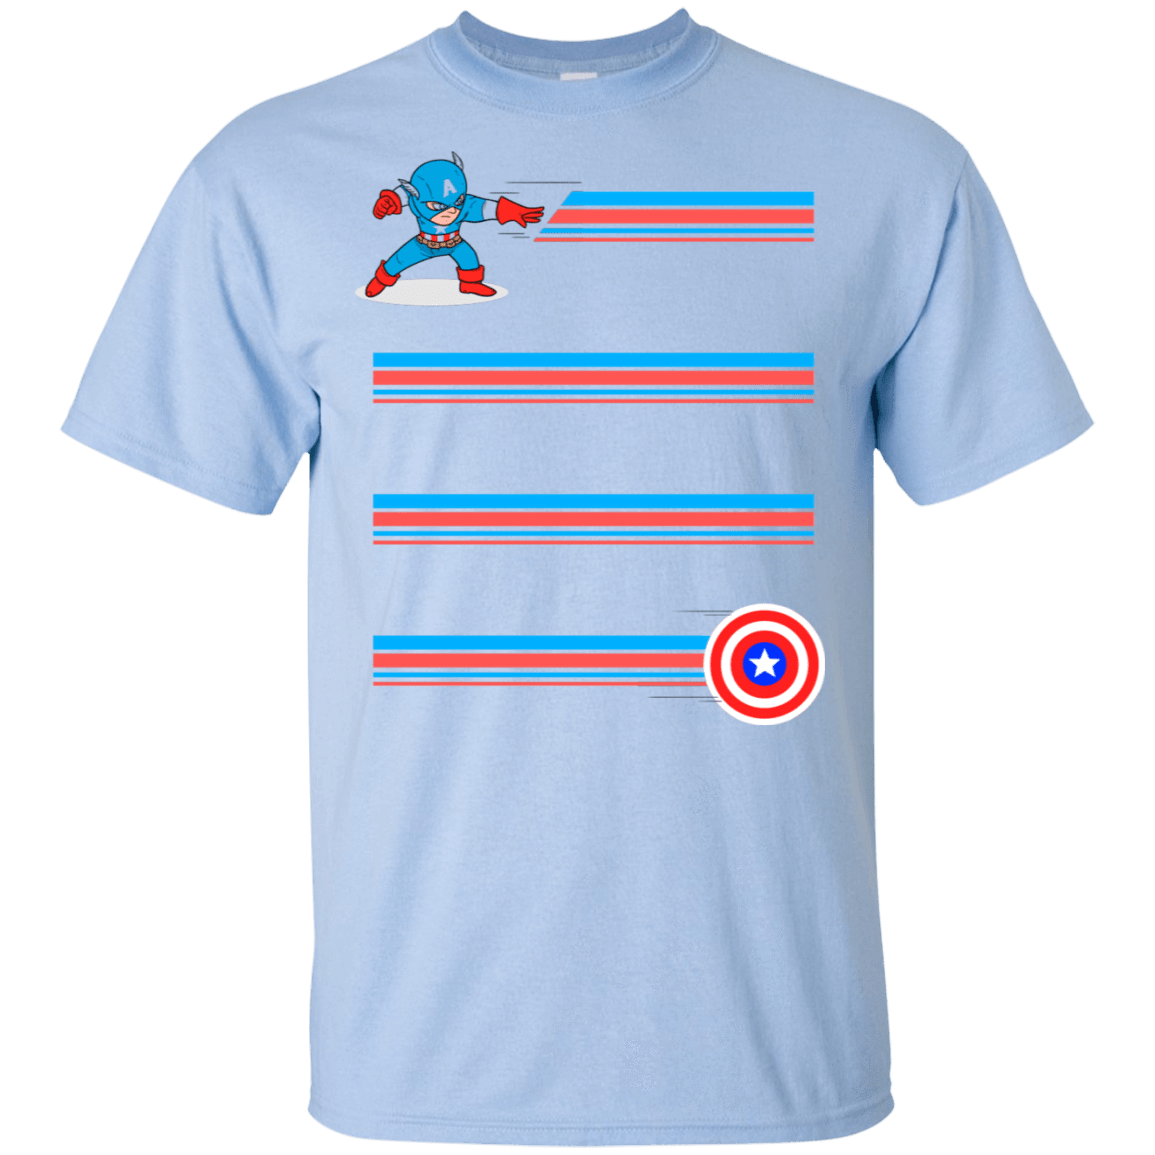 T-Shirts Light Blue / S Line Captain T-Shirt